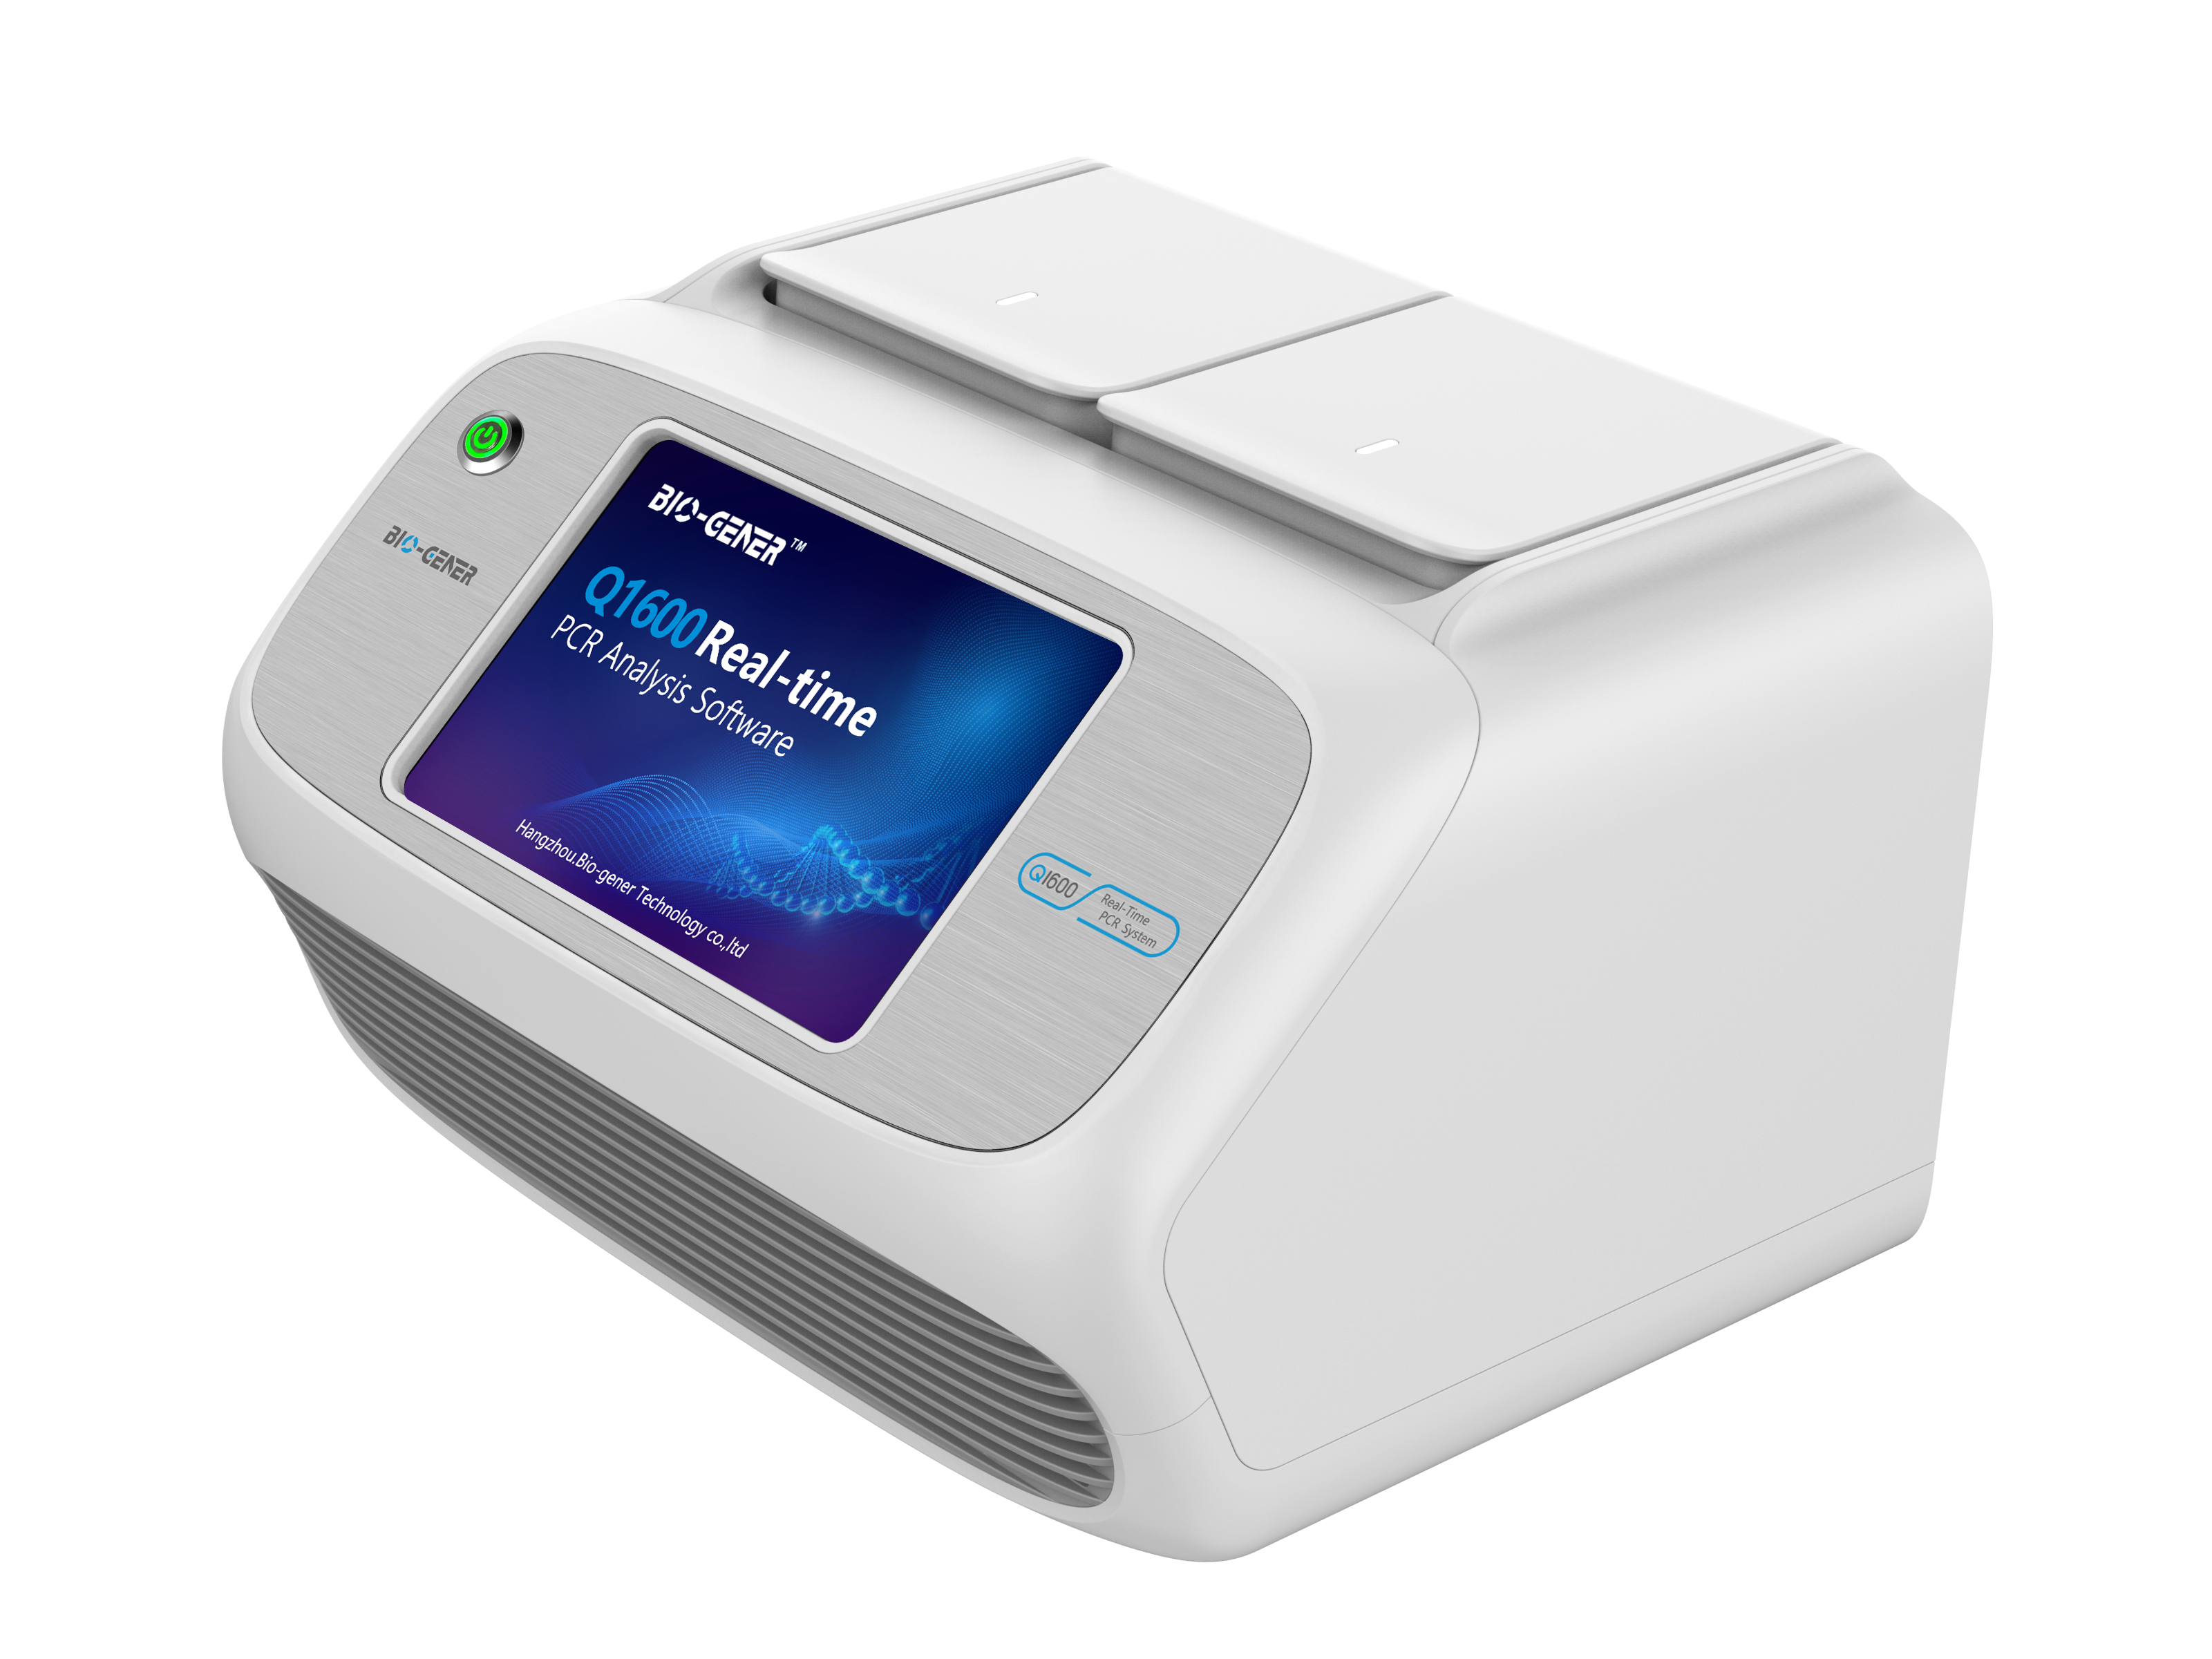 Q1600 Real Time PCR Indogen